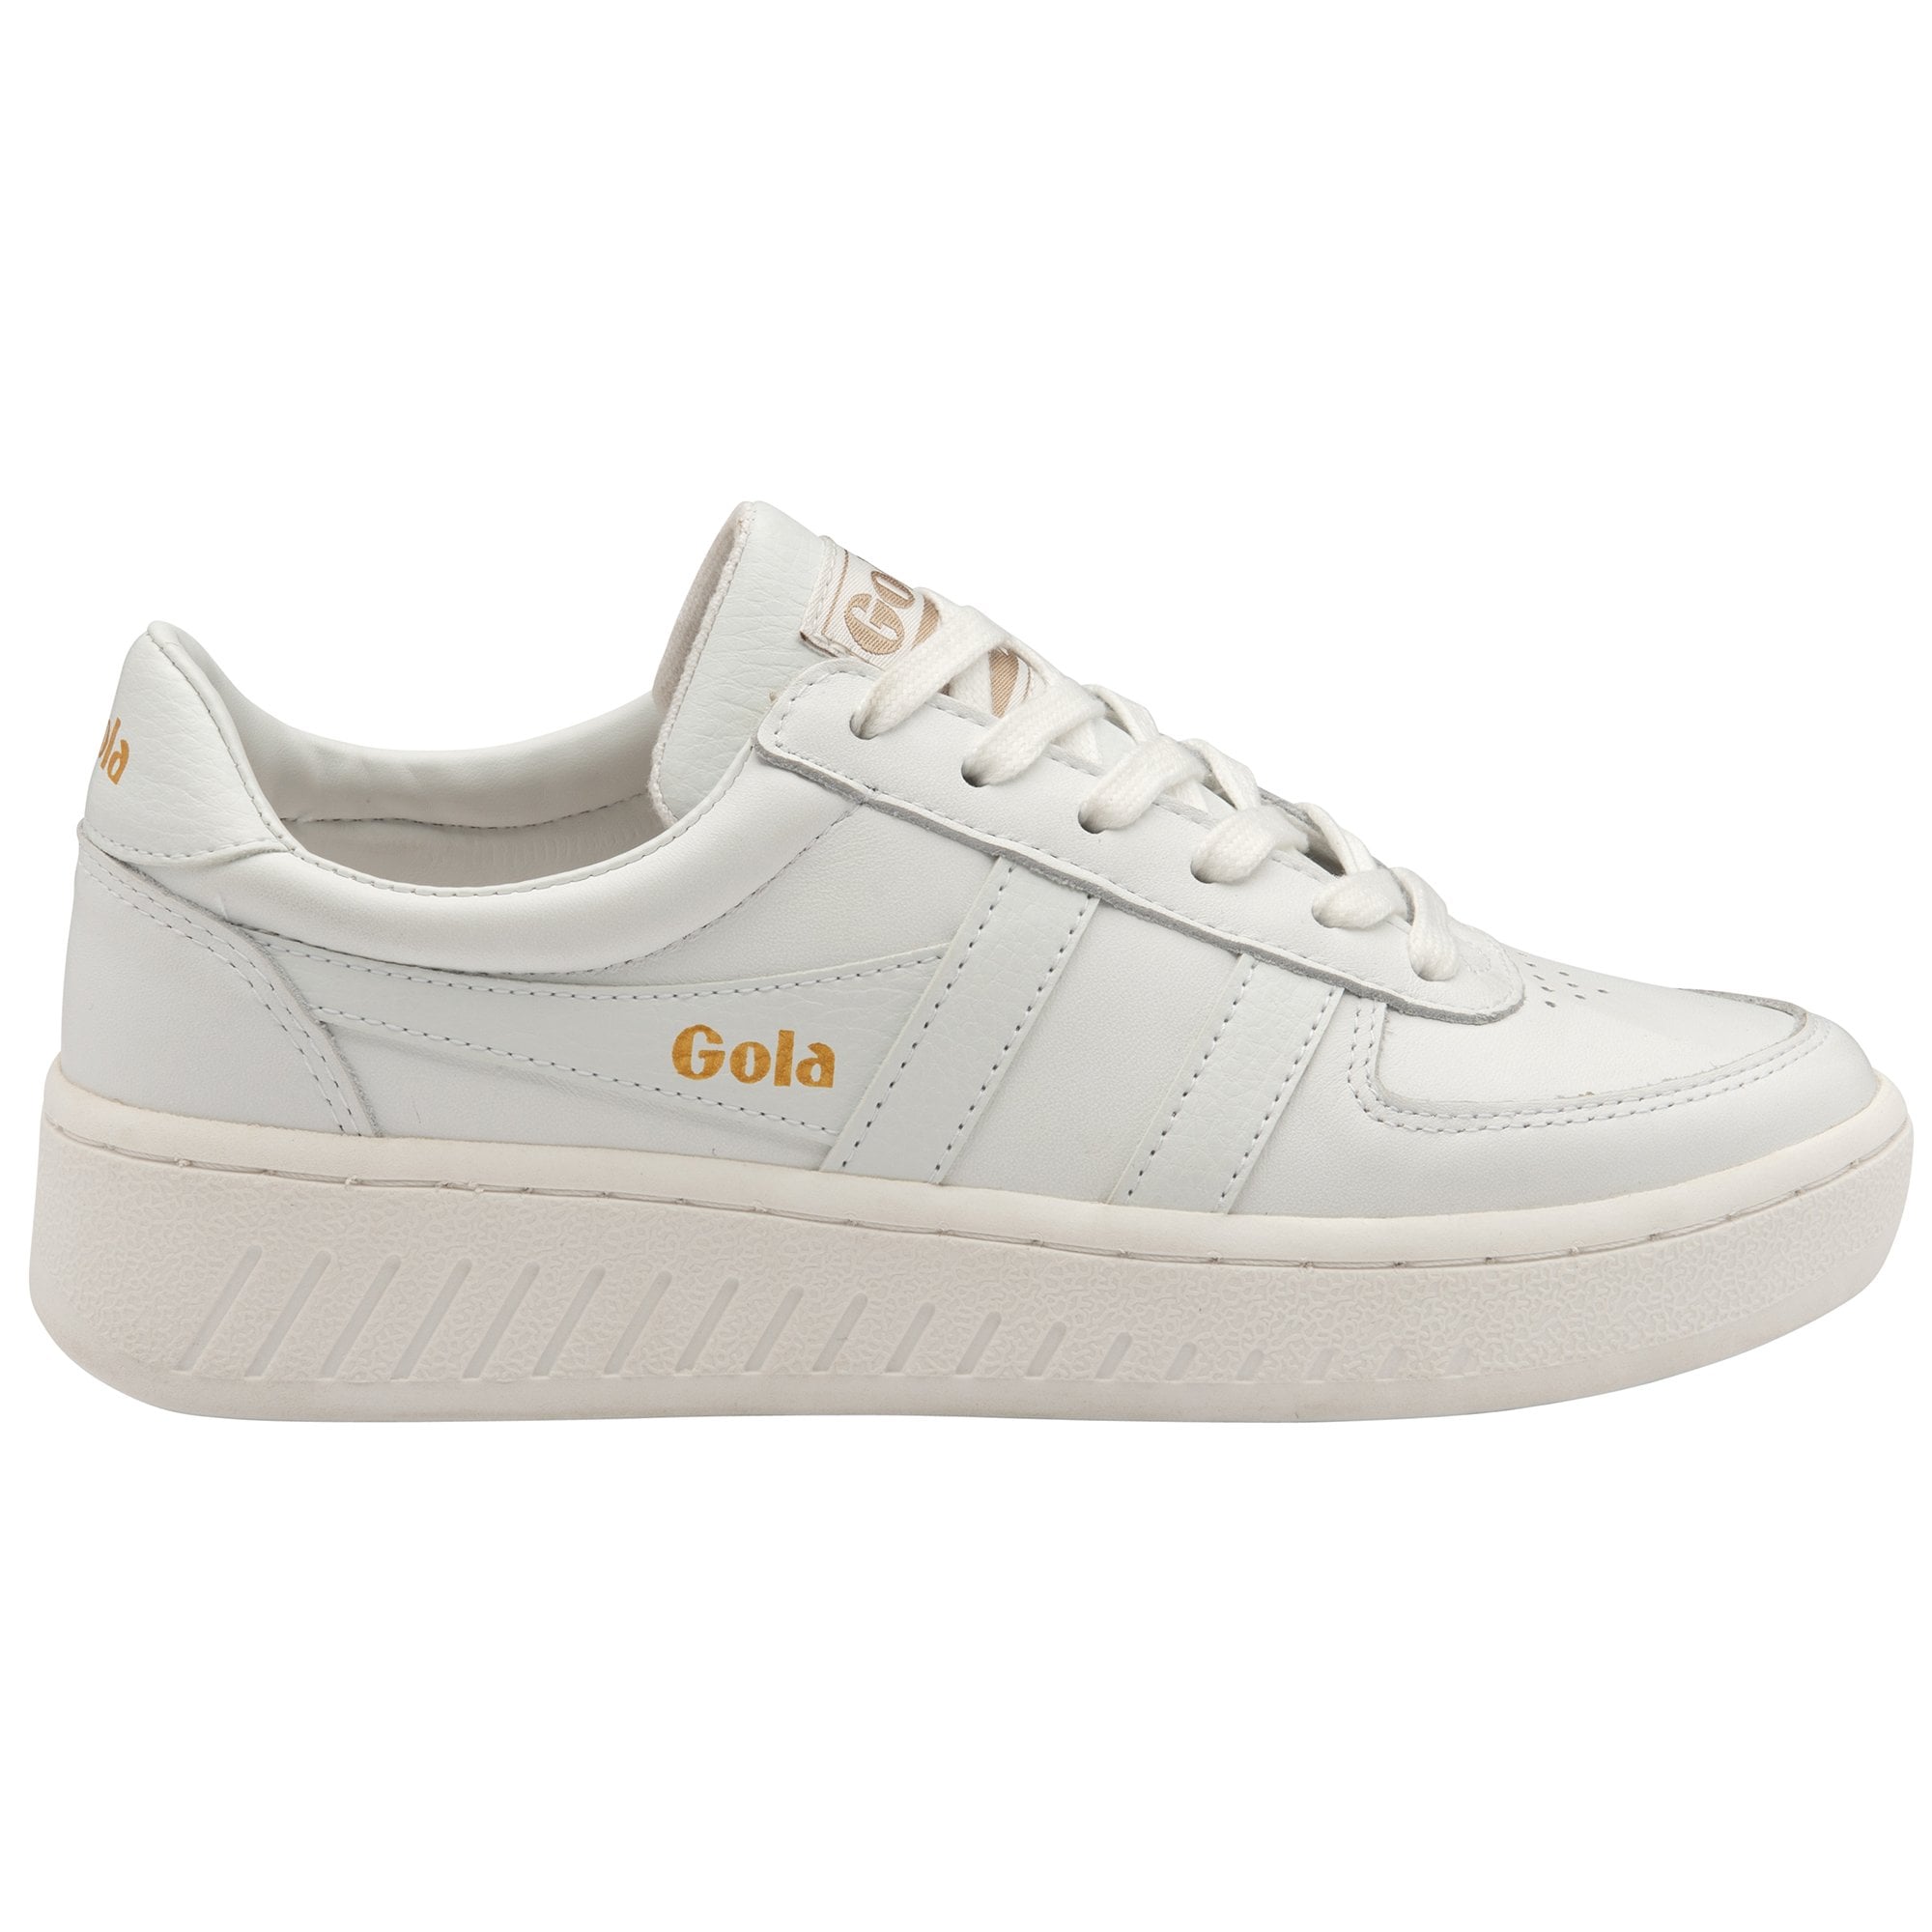 Gola Classics Women's Sneaker Grandslam Leather in White